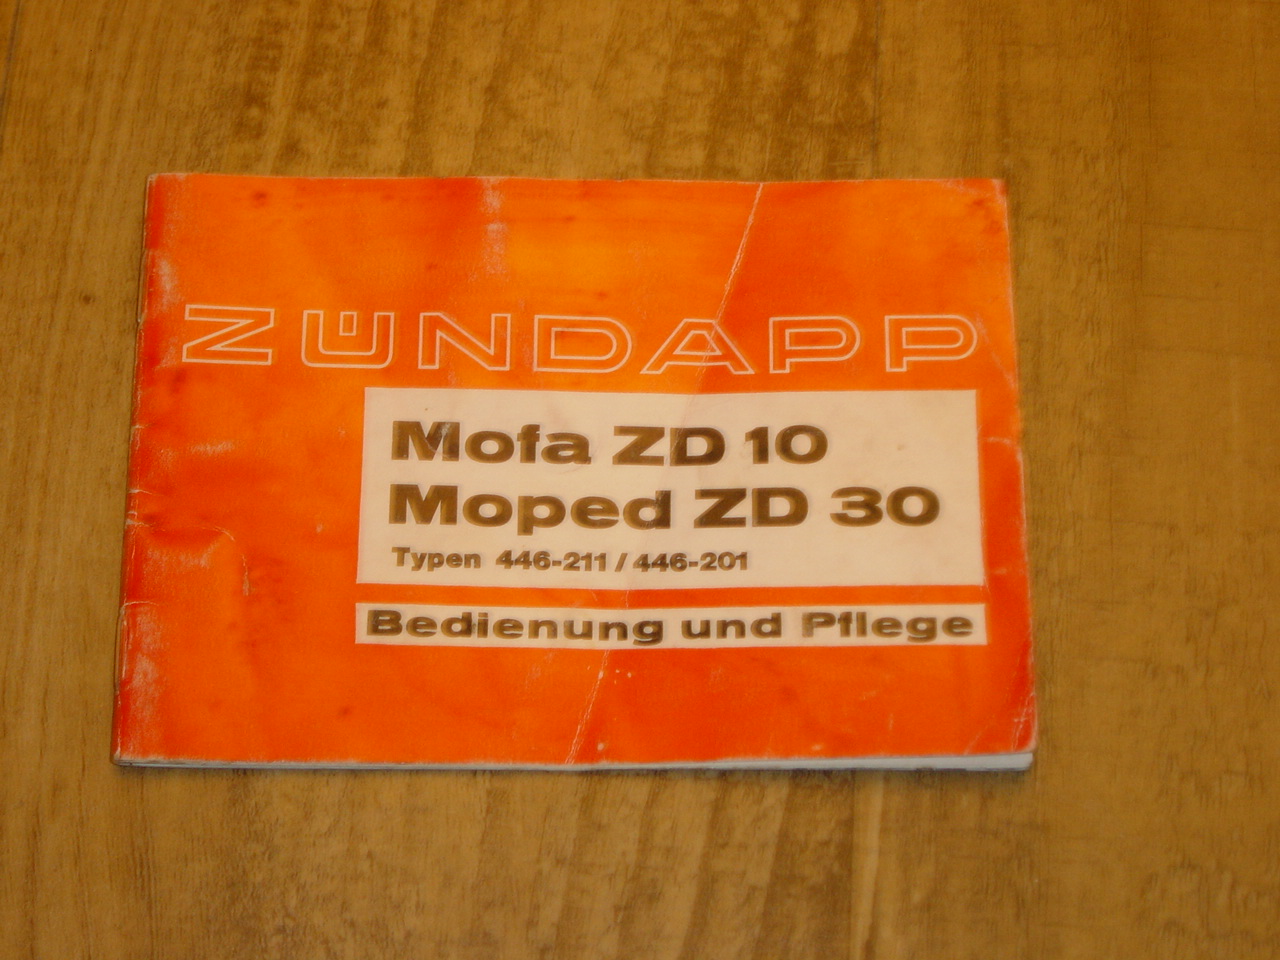 Bedienungsanleitung D - 446 - Mofa ZD 10  , Moped ZD 30